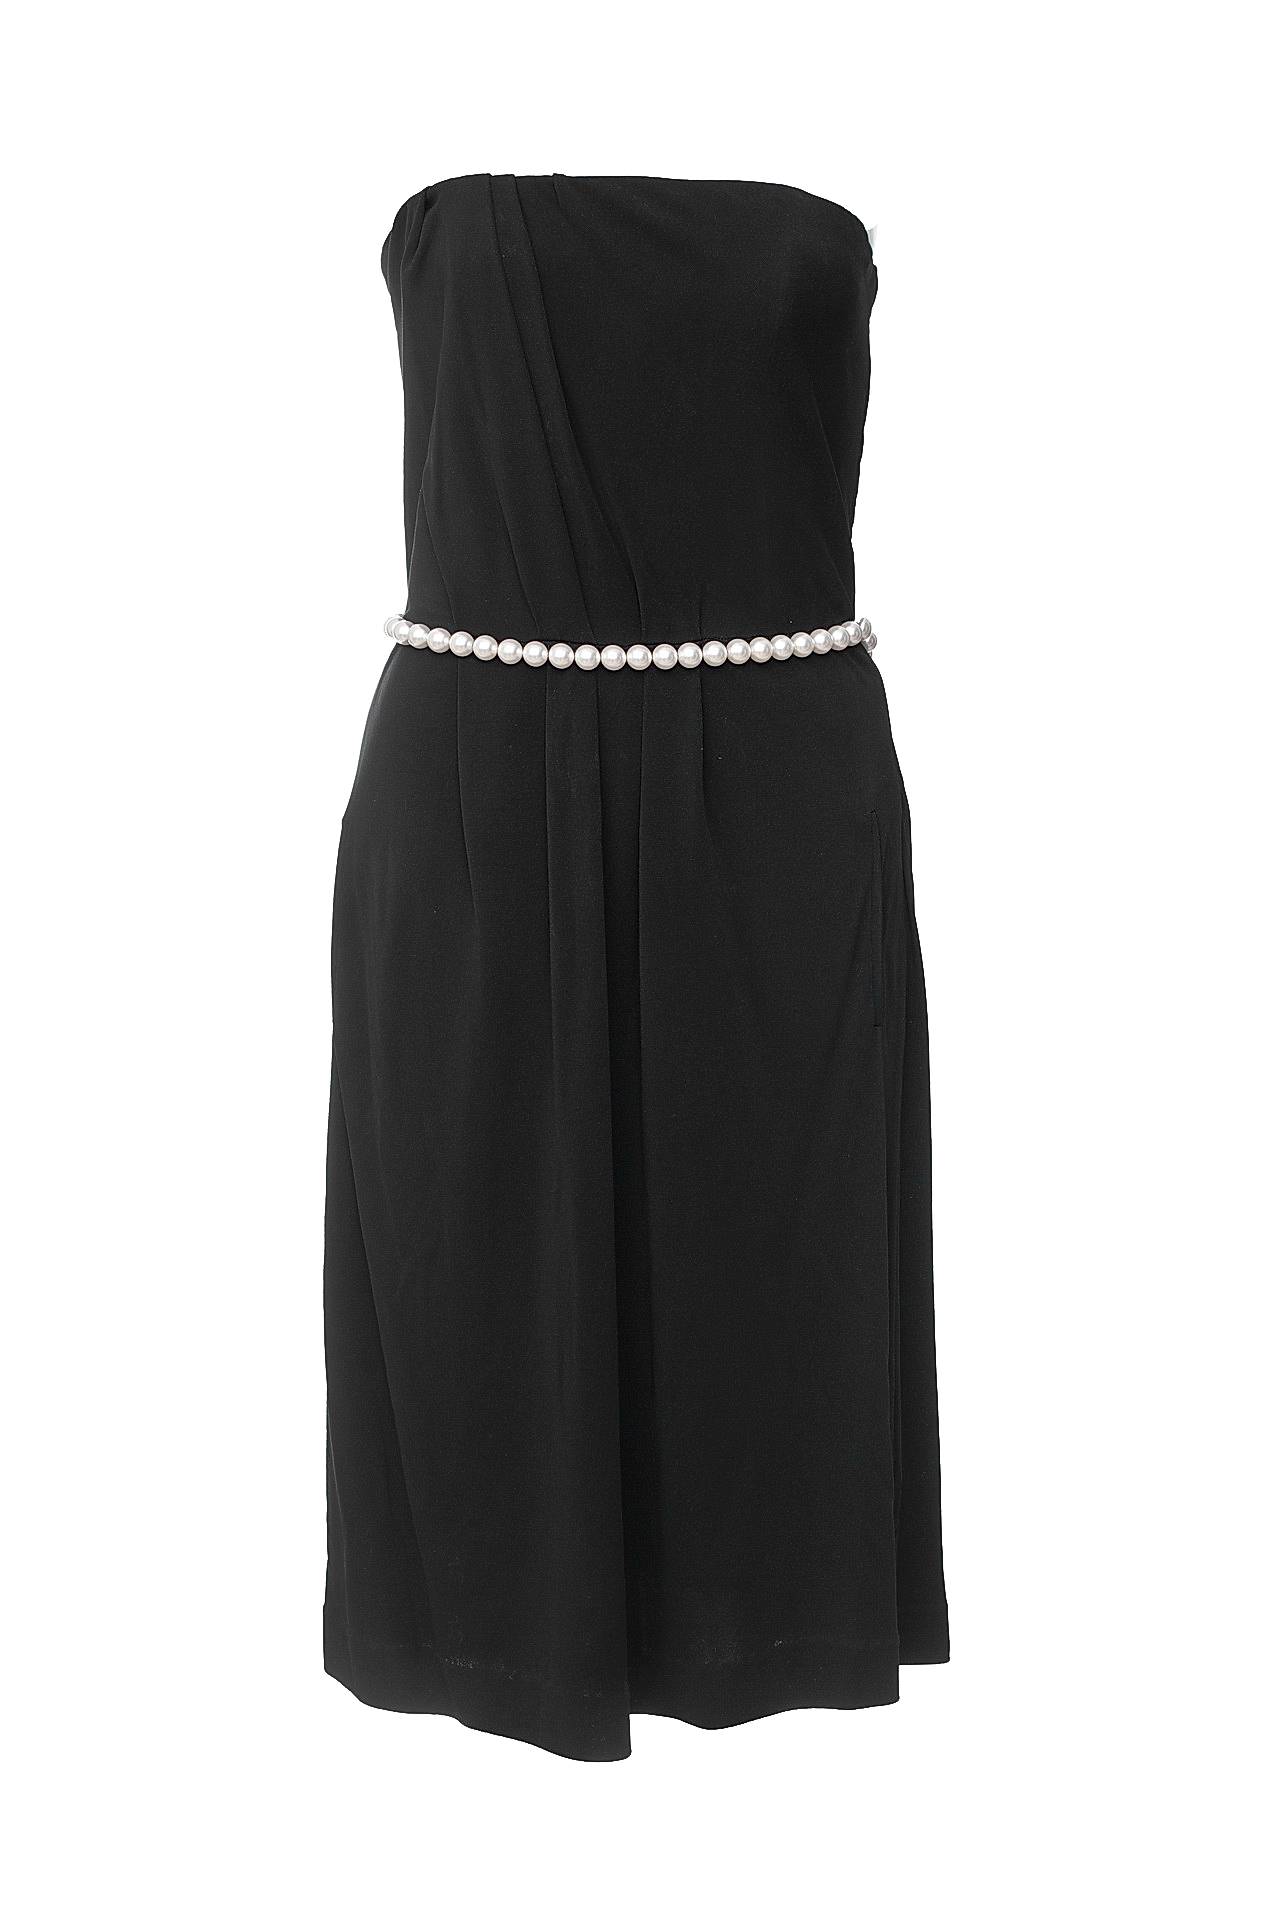 Одежда женская Платье CHANEL (P35102V20925/19). Купить за 79750 руб.